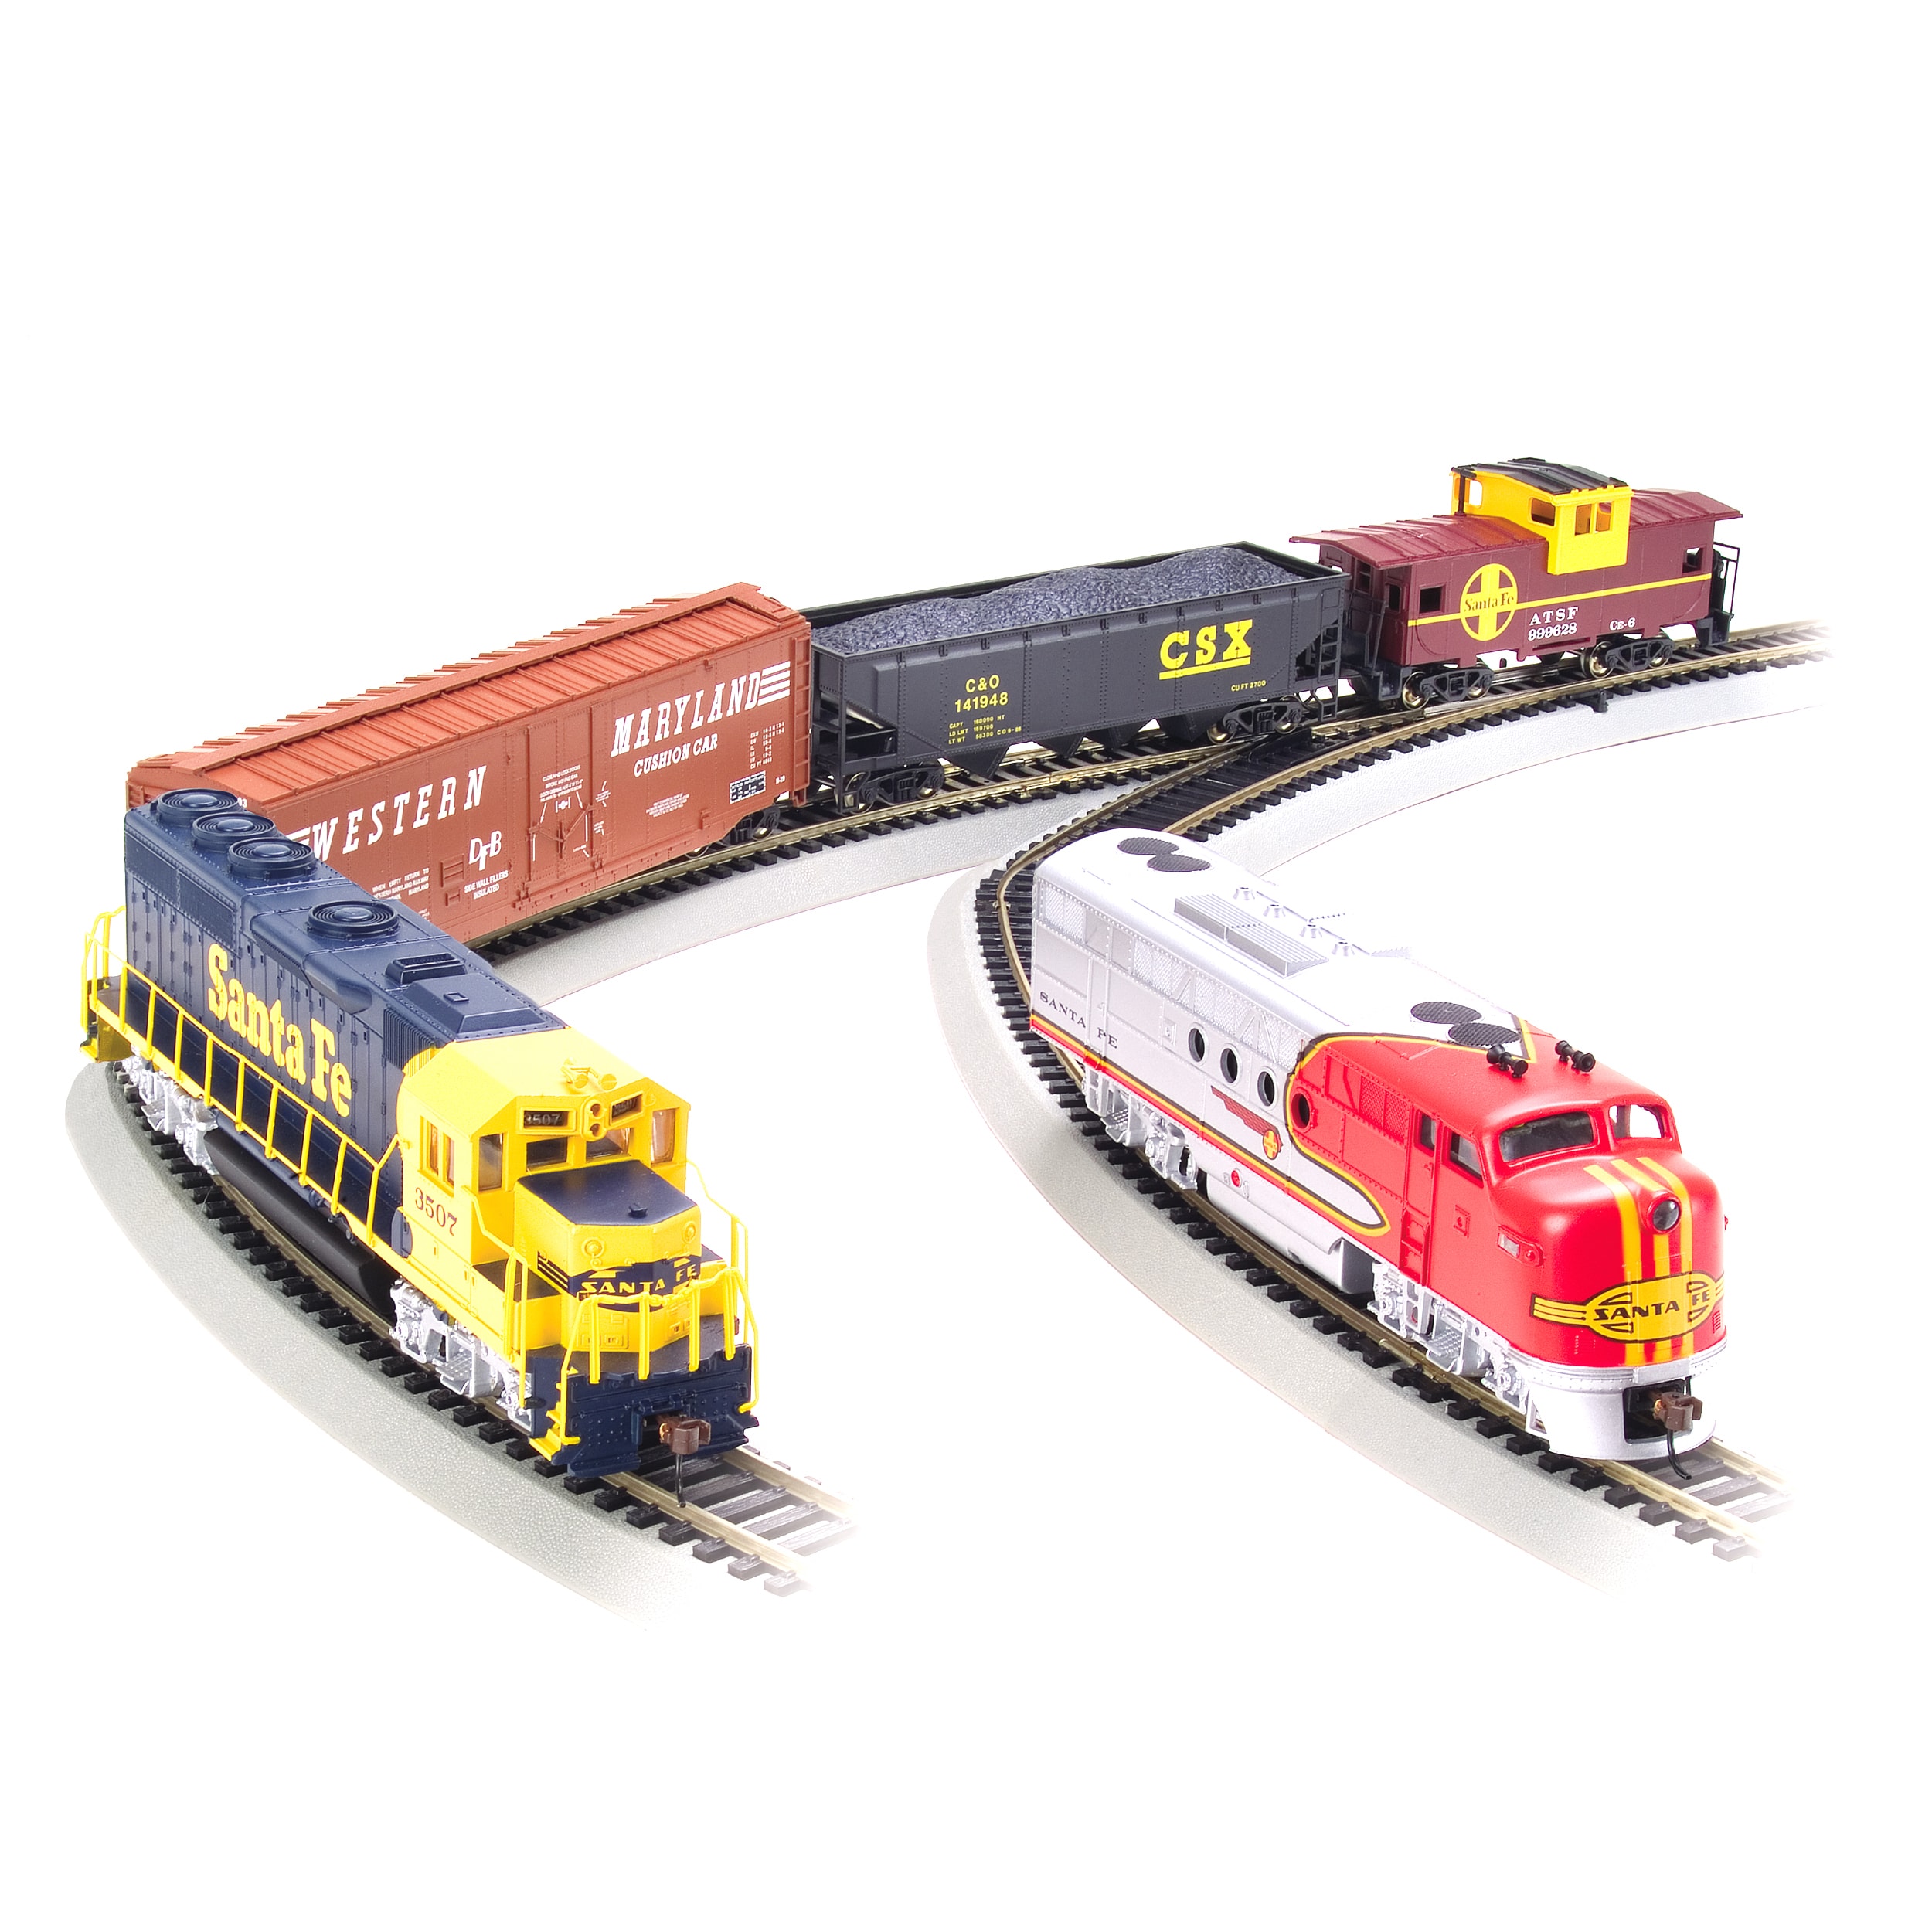 electric model train sets